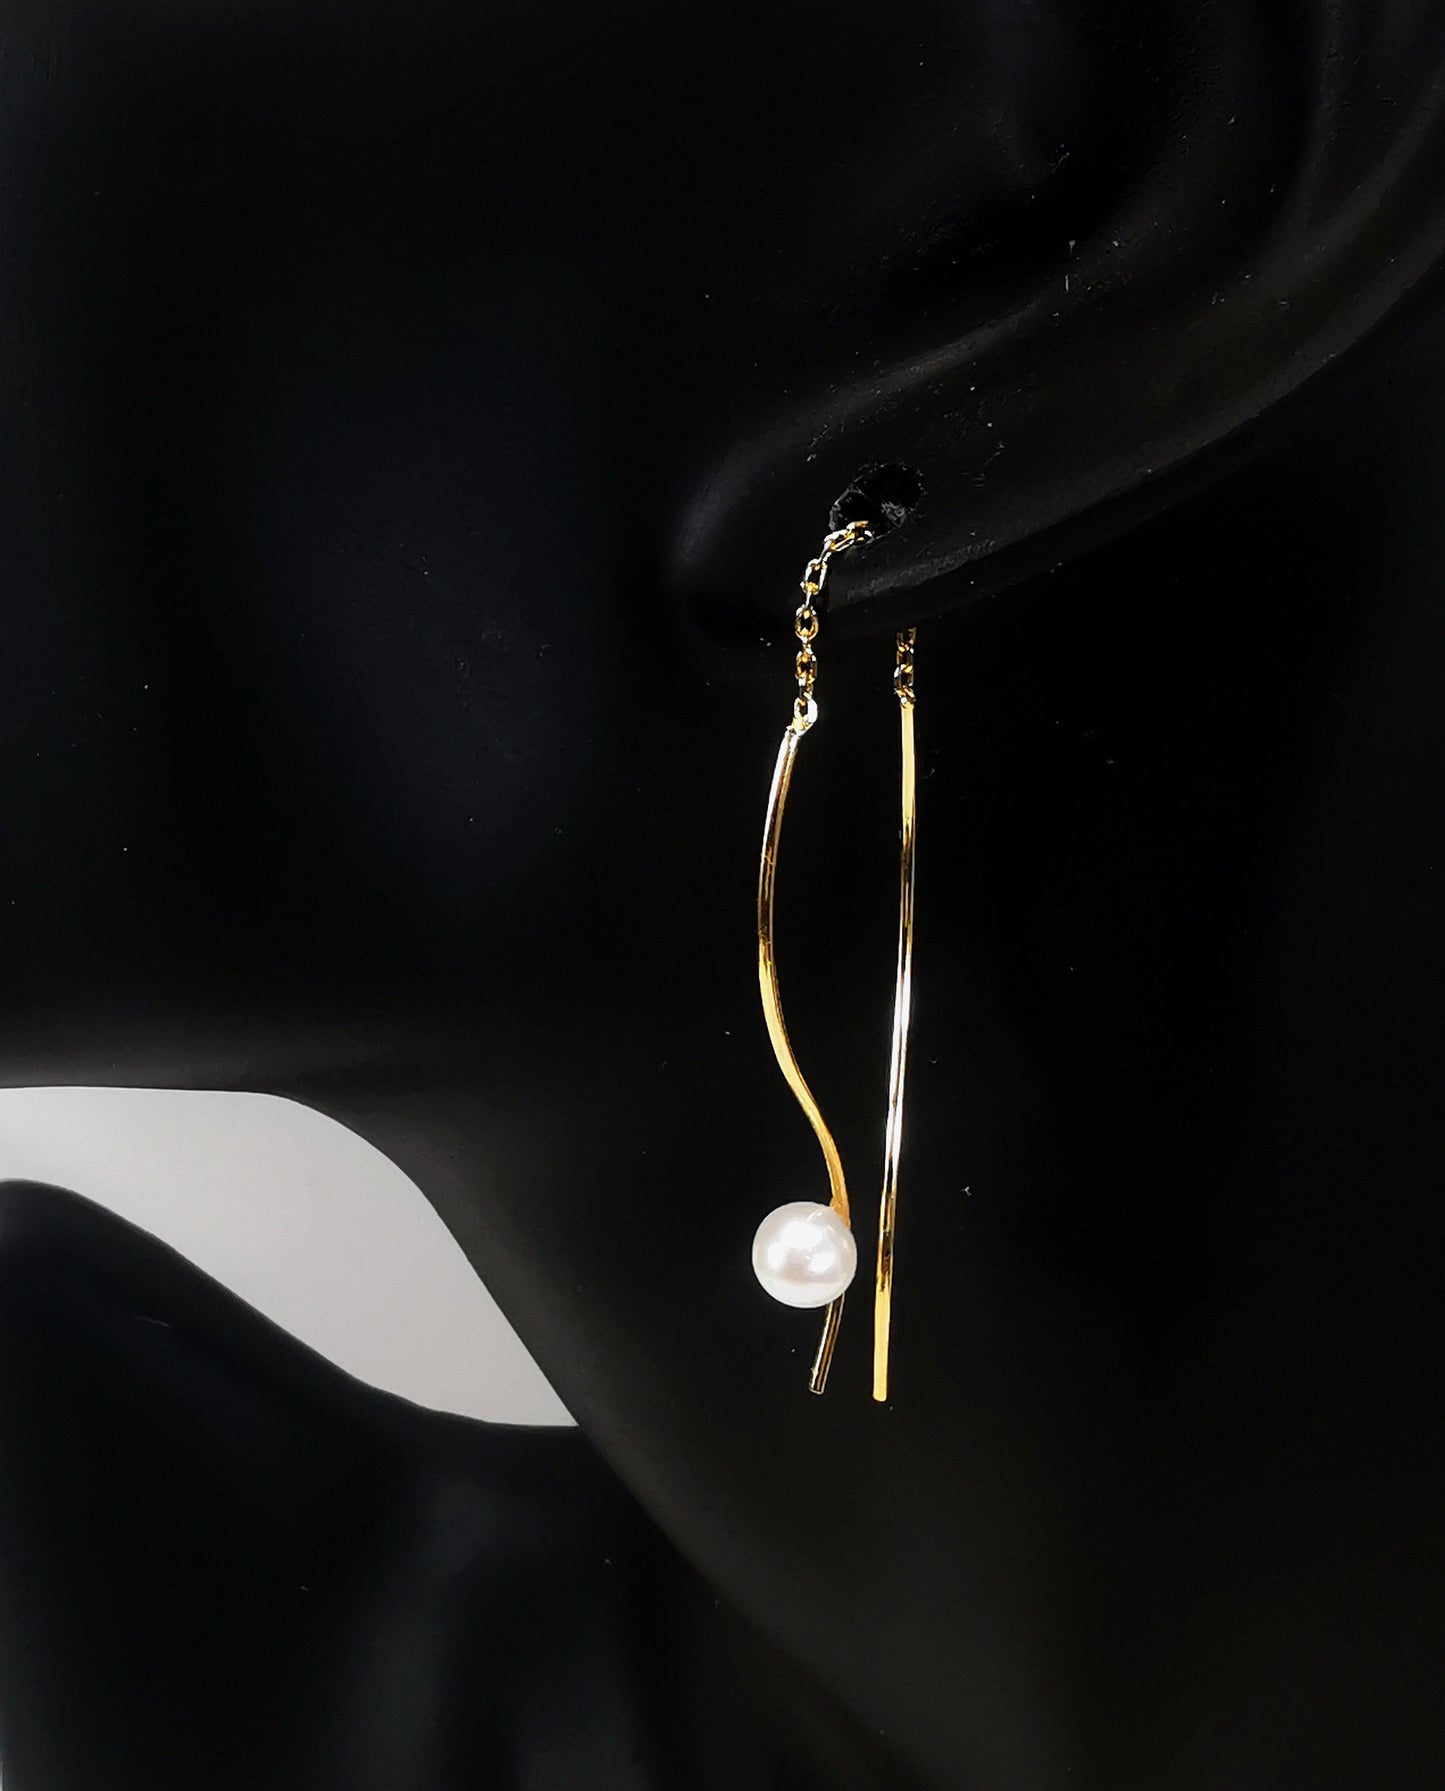 Boucles d'oreilles perles de culture blanches rondes 5mm sur pendants plaqués or. Les pendants sont constitués de deux "s" longs de 45mm reliés par 15mm de chaine. Sur un des 2 "s", la perle est montée perpendiculairement, à 8mm du bas. Représentées par une boucle montée sur l'oreille d'un mannequin buste noir, le "s" avec la perle devant le lobe, l'autre derrière, à la même hauteur. Vue de coté en très gros plan.